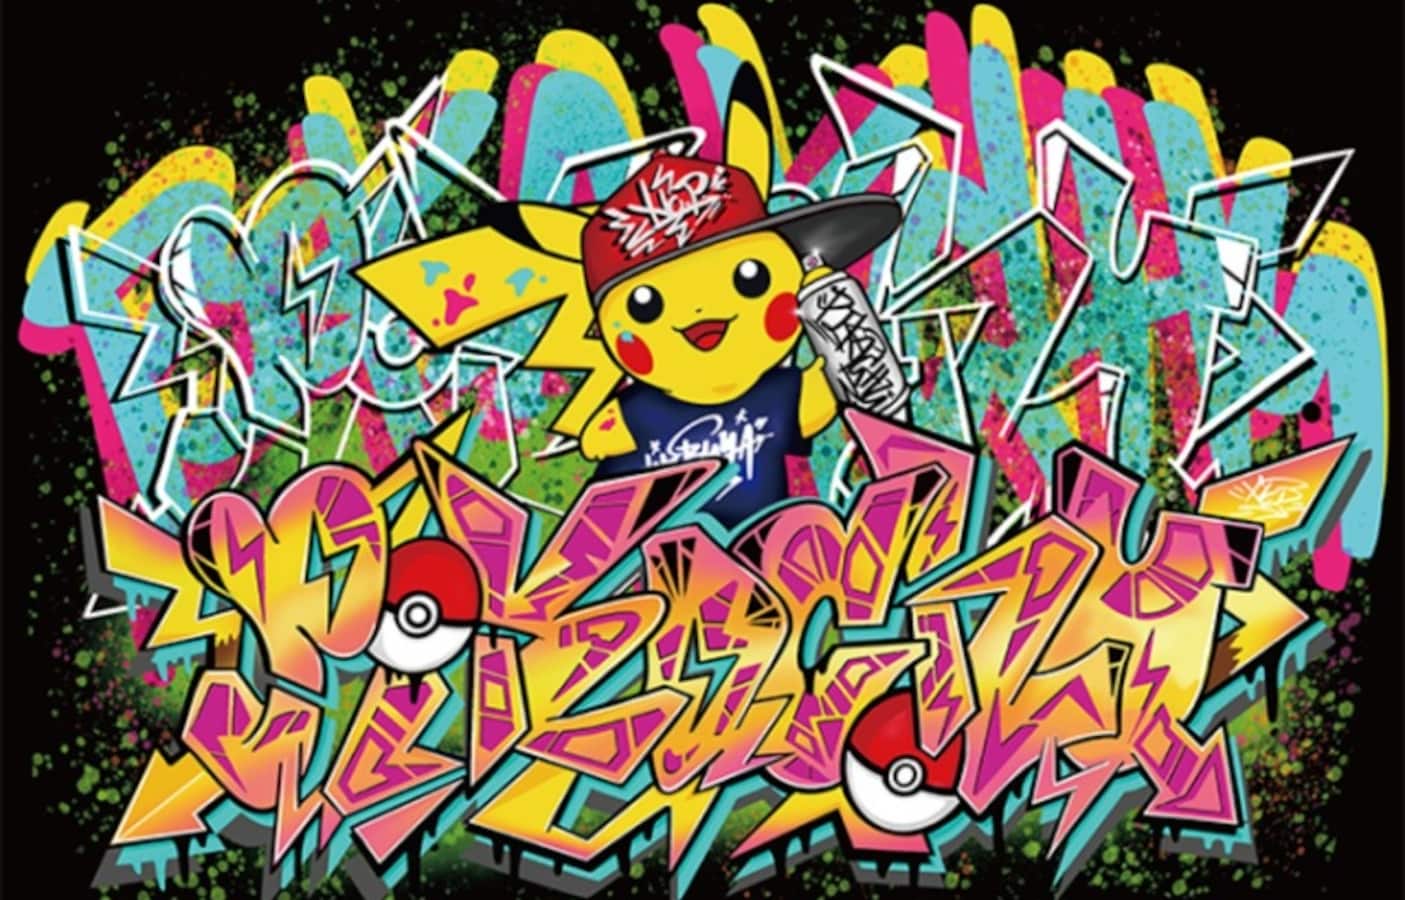 Graffiti Pikachu At Shibuya S Pokemon Center All About Japan